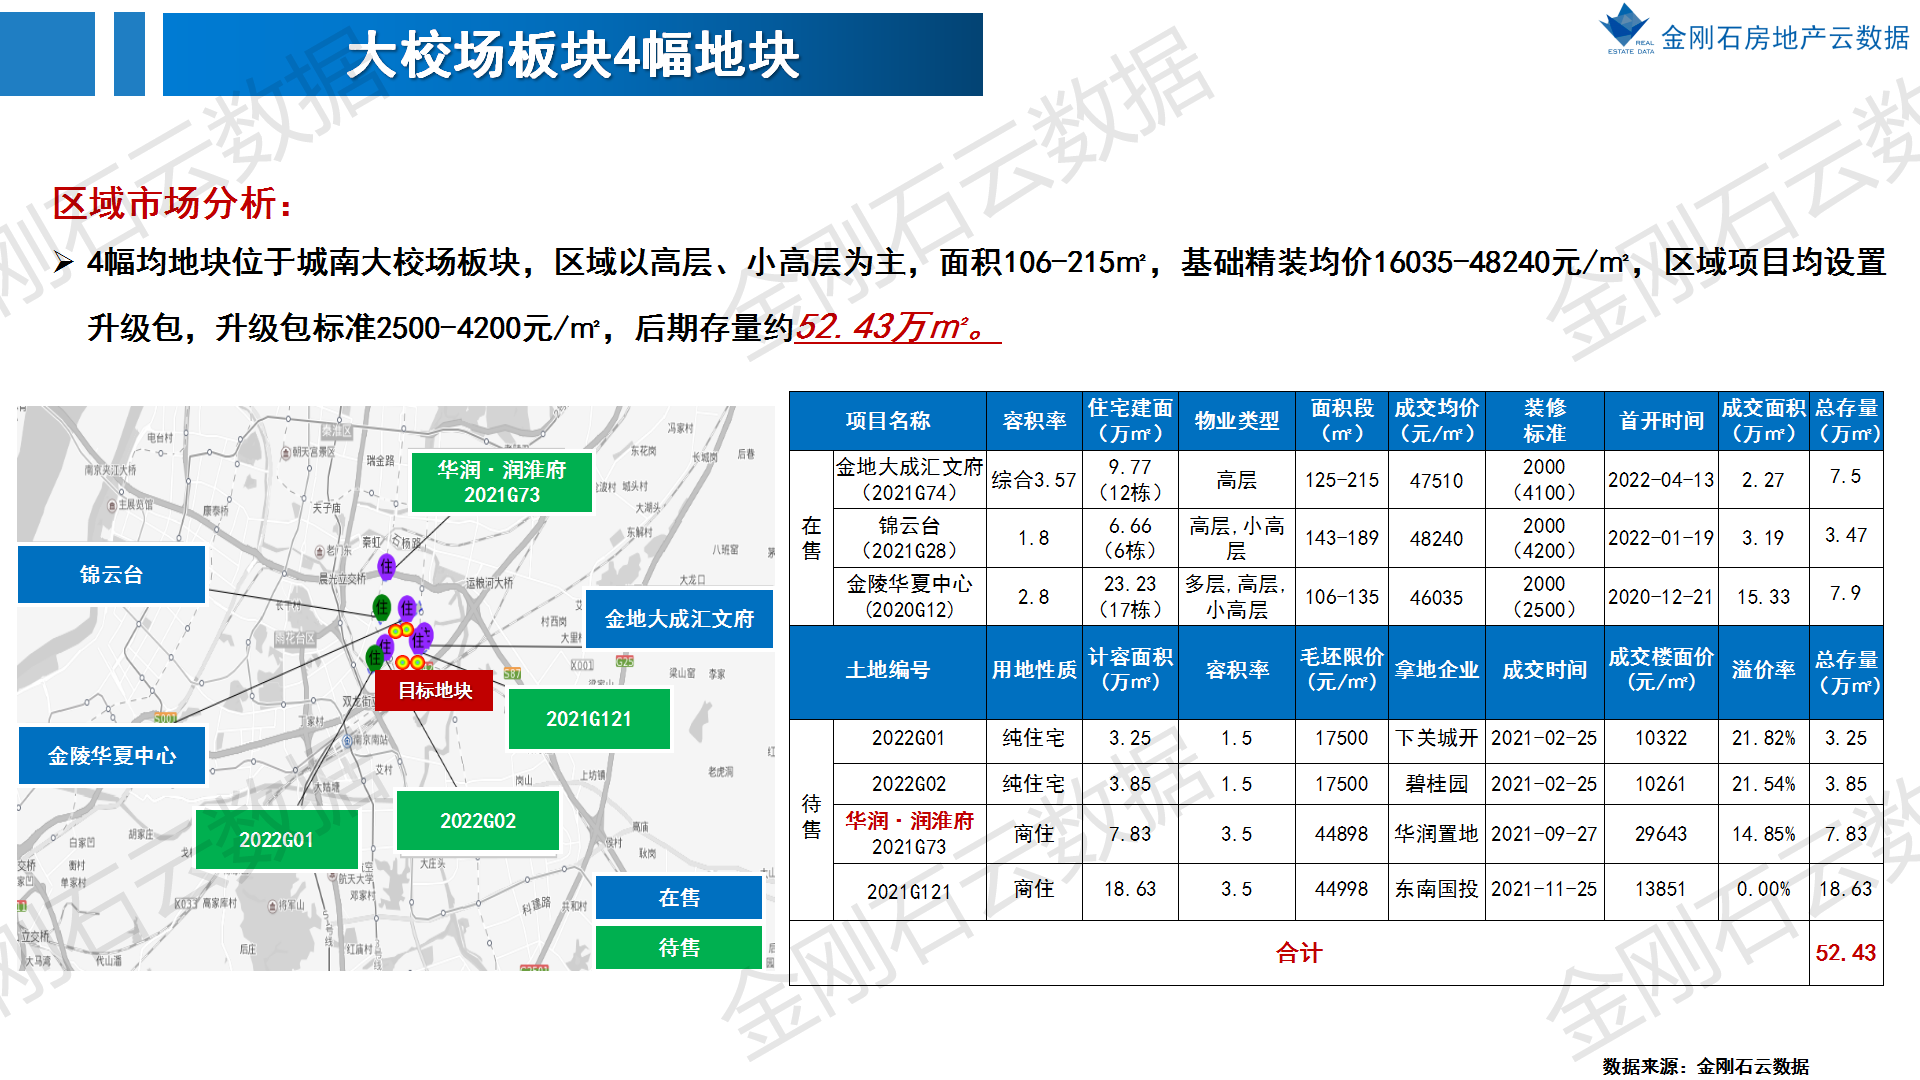 2022年南京第二批次地块 前期市场简报(图11)